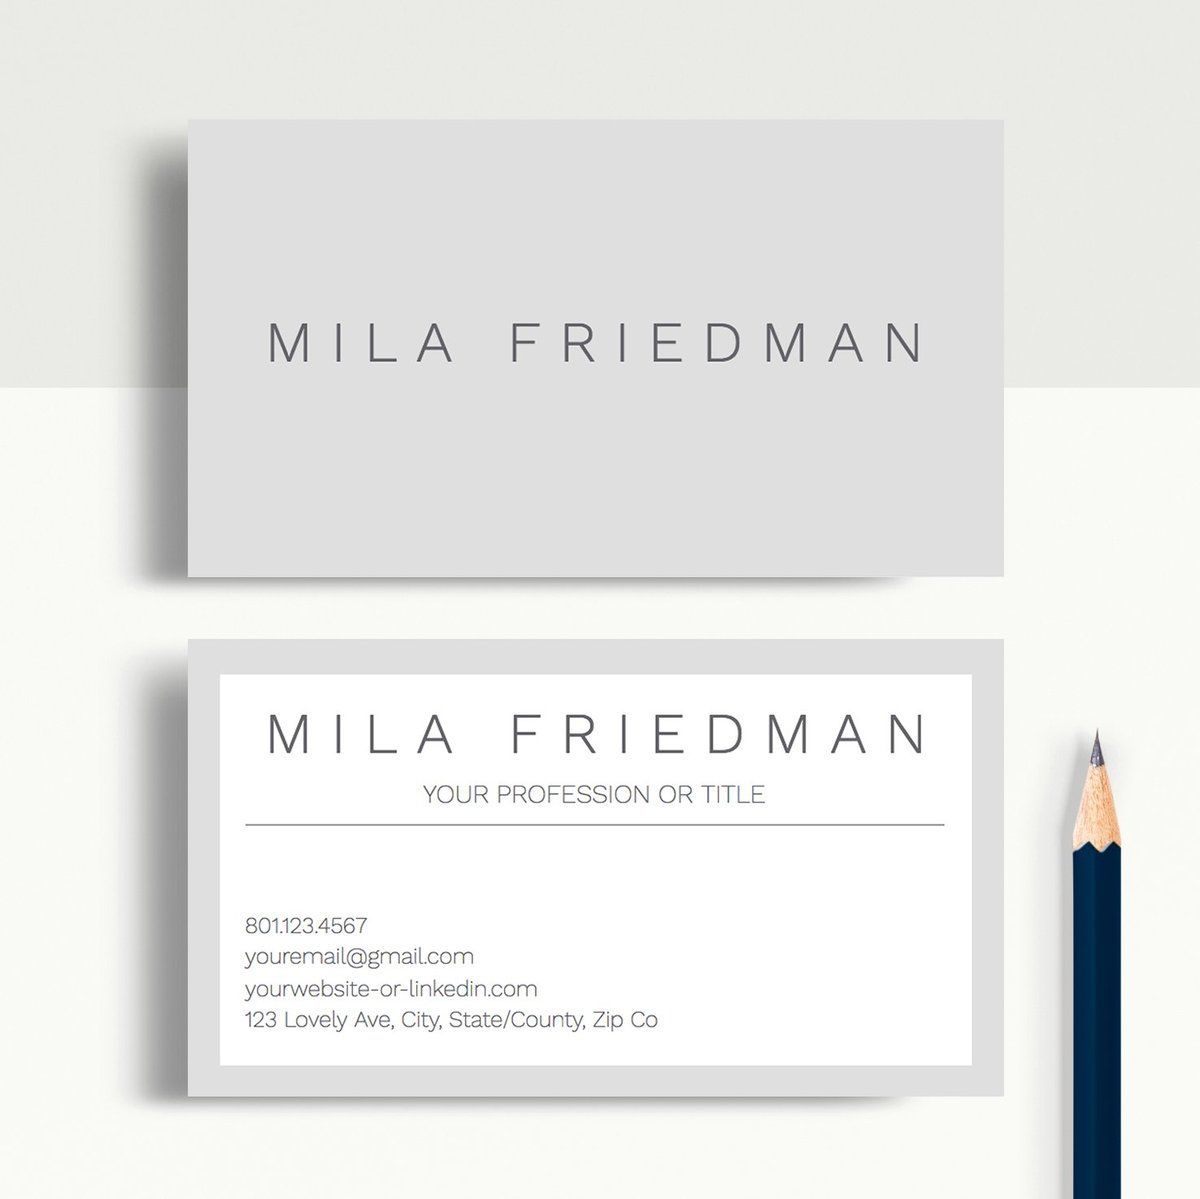 Mila Friedman | Google Docs Professional Business Cards Throughout Google Docs Business Card Template